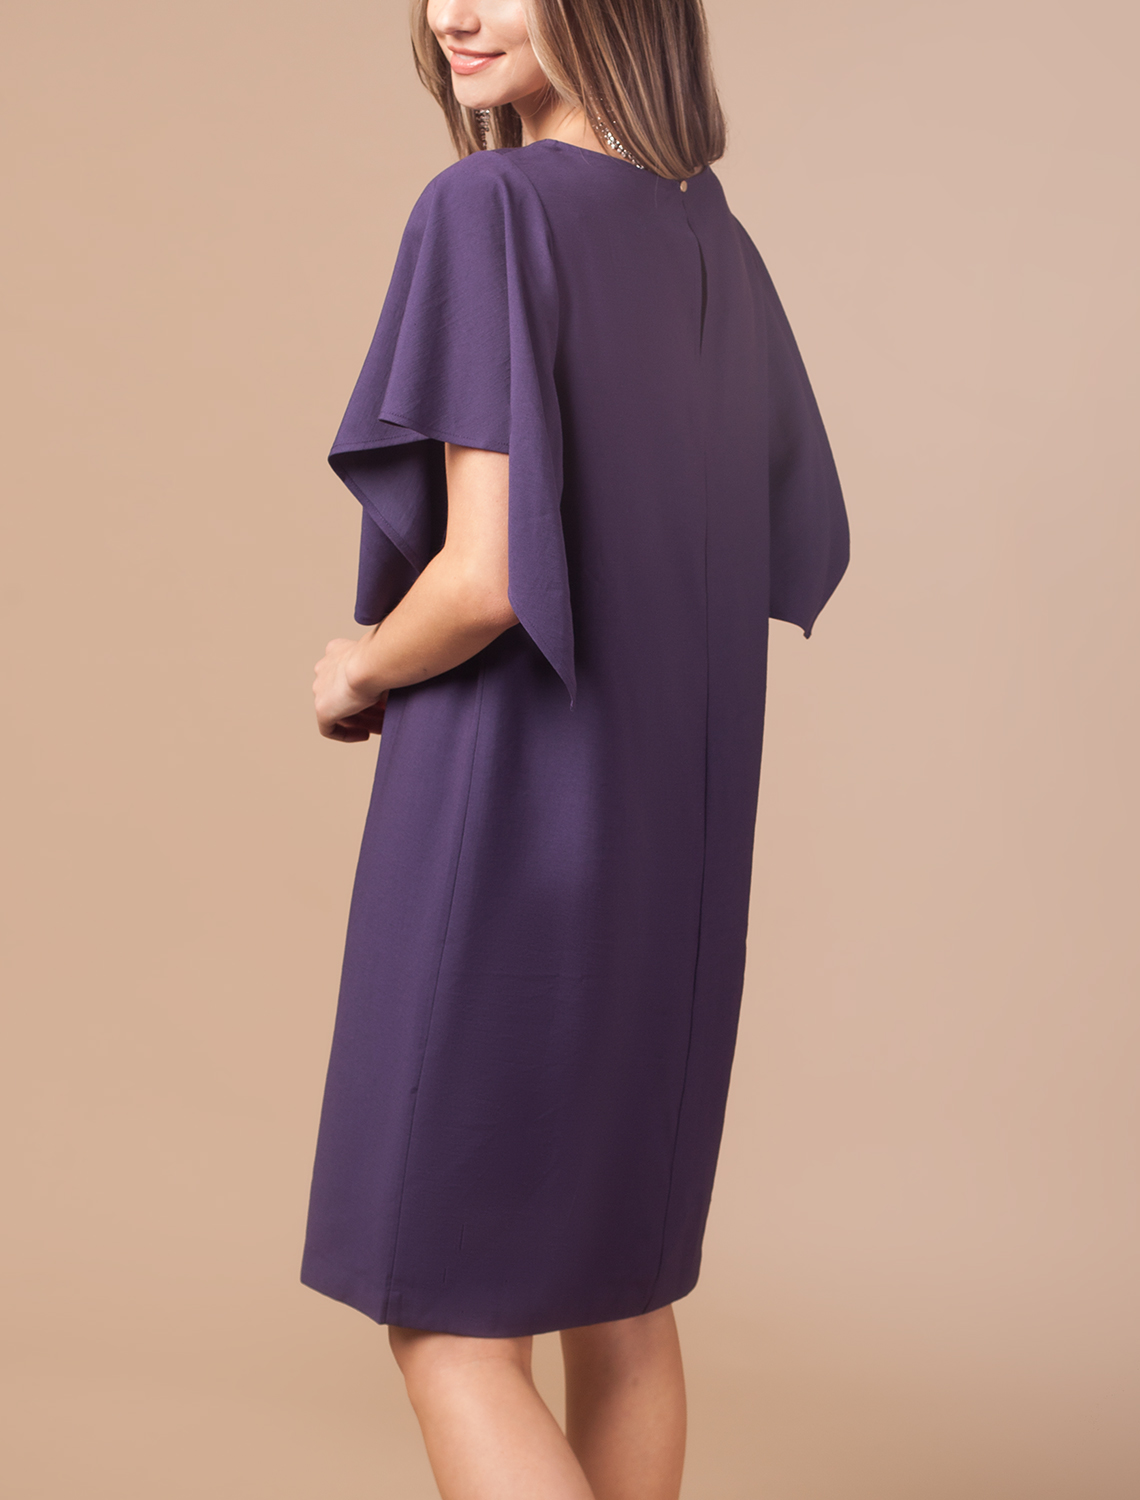 Вискозное платье универсального кроя - чуть ниже колена, с широкими проймами и акцентными рукавами.